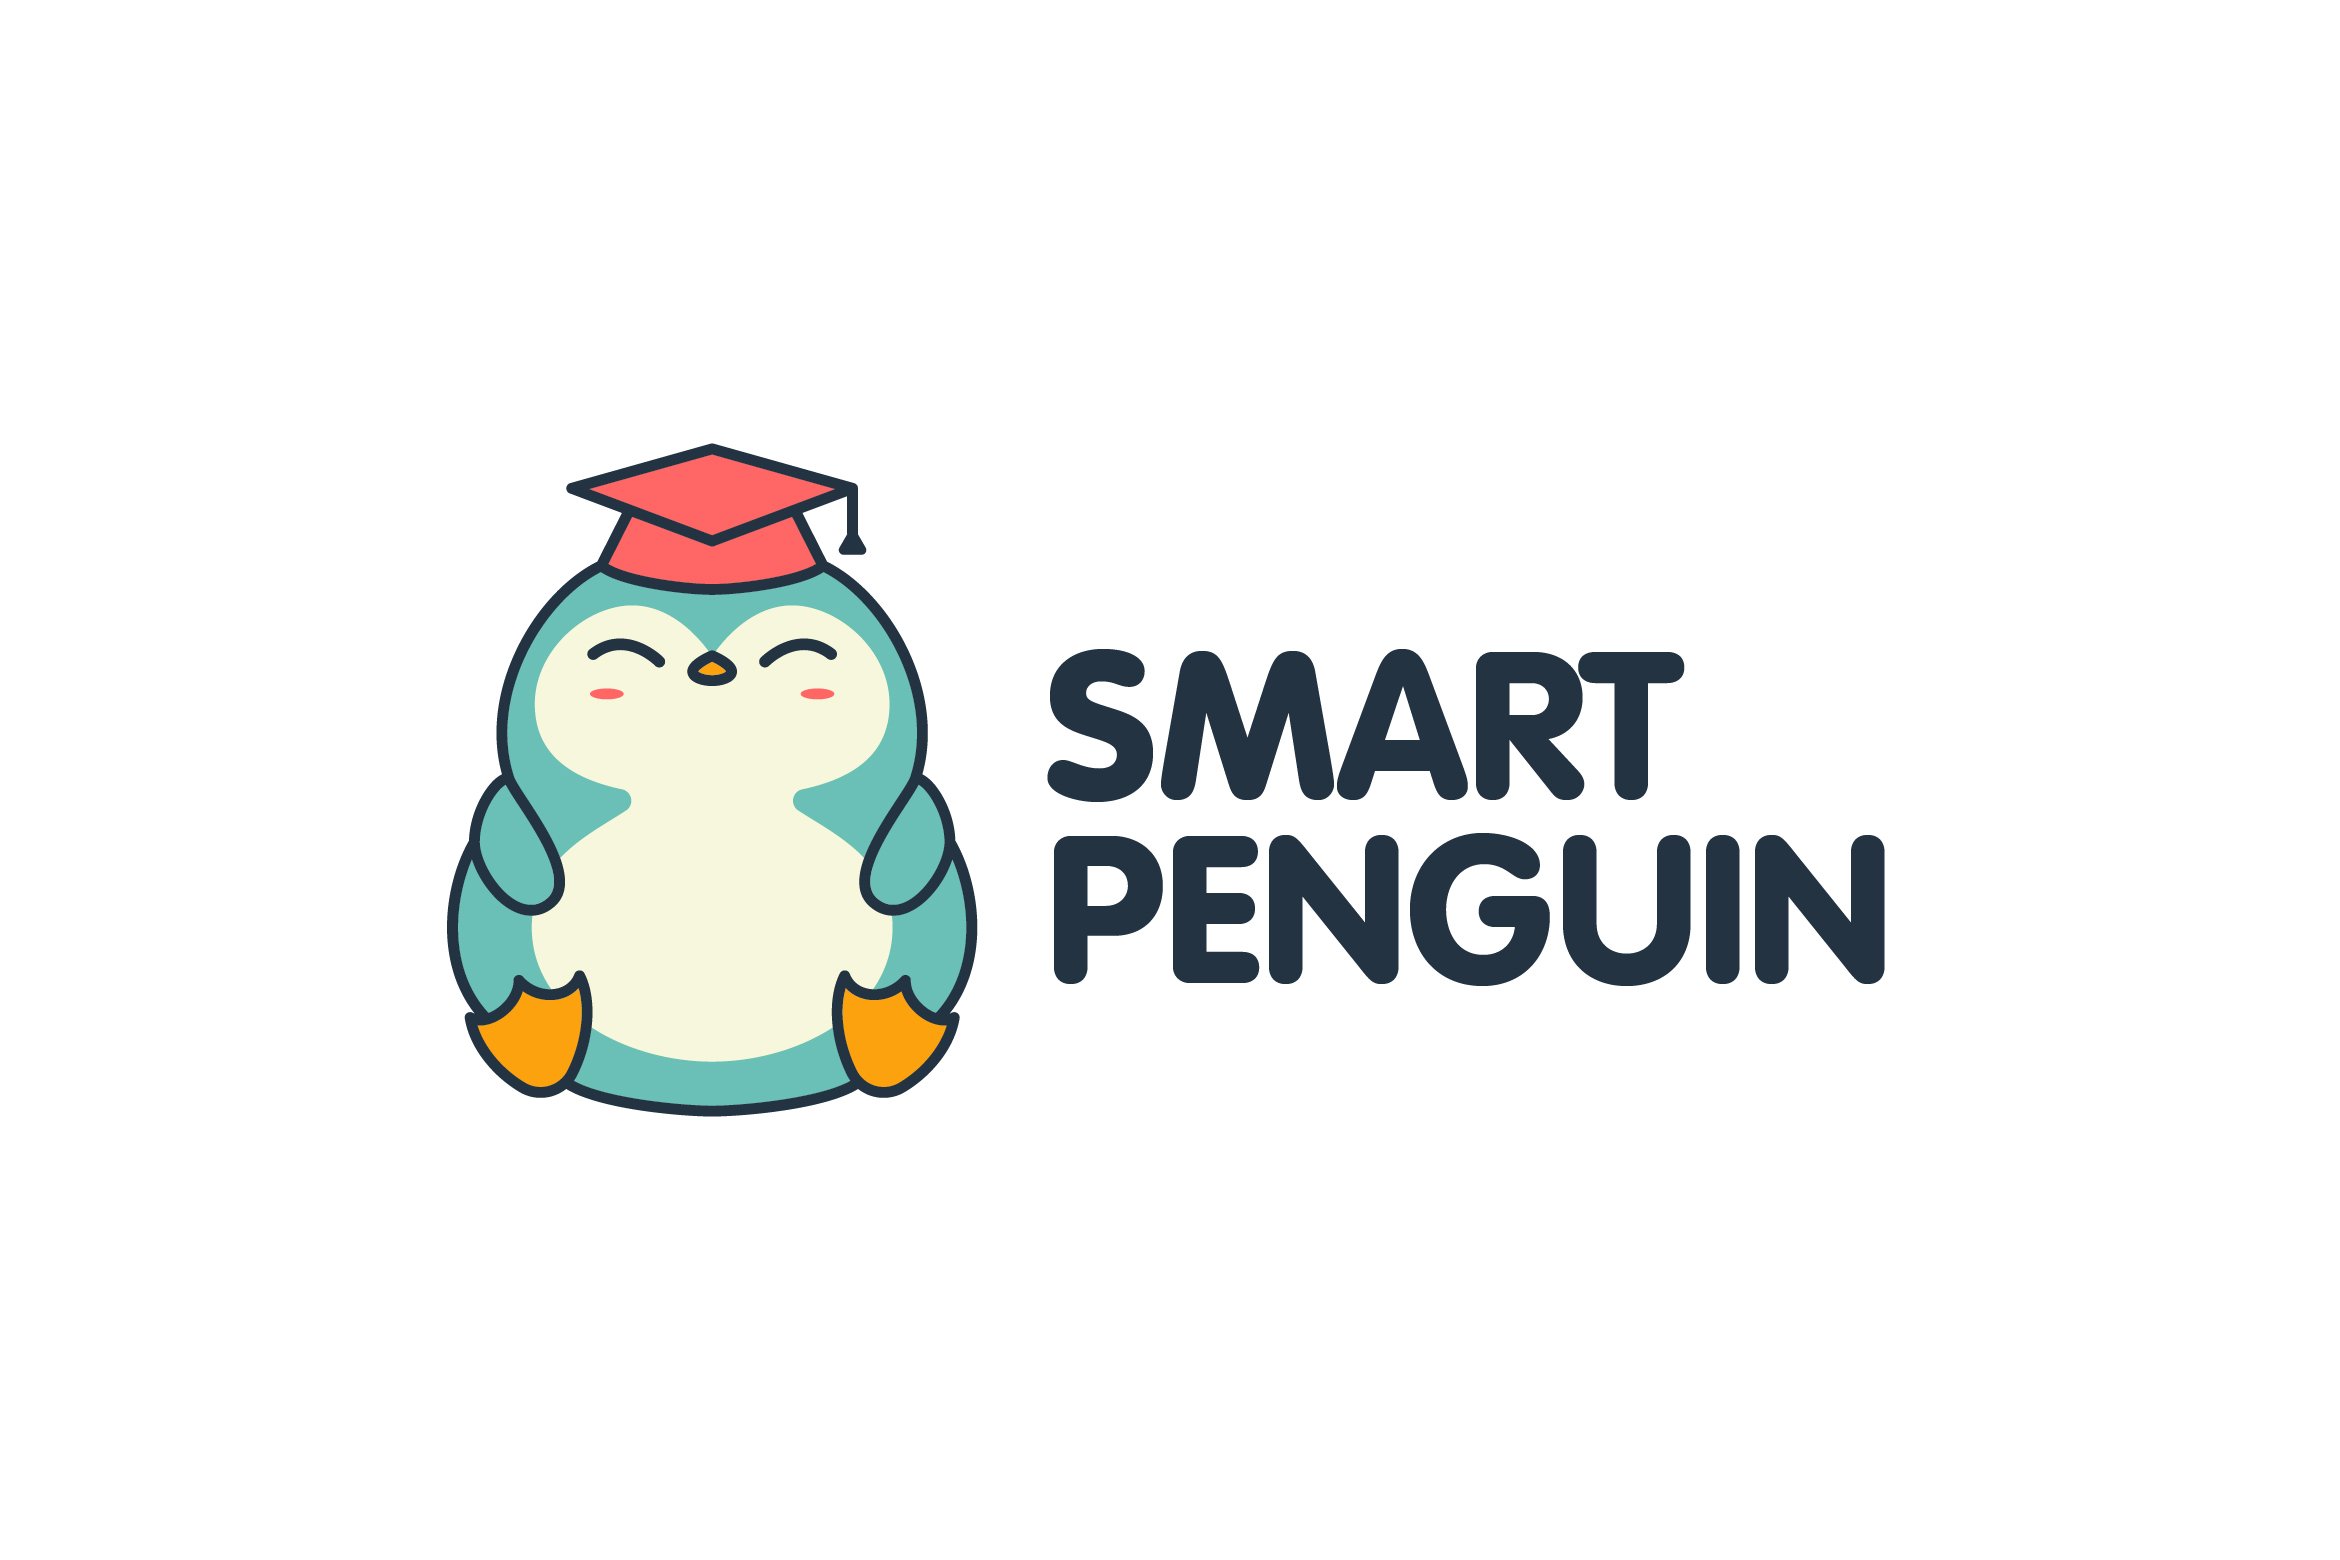 Smart Penguin Logo cover image.